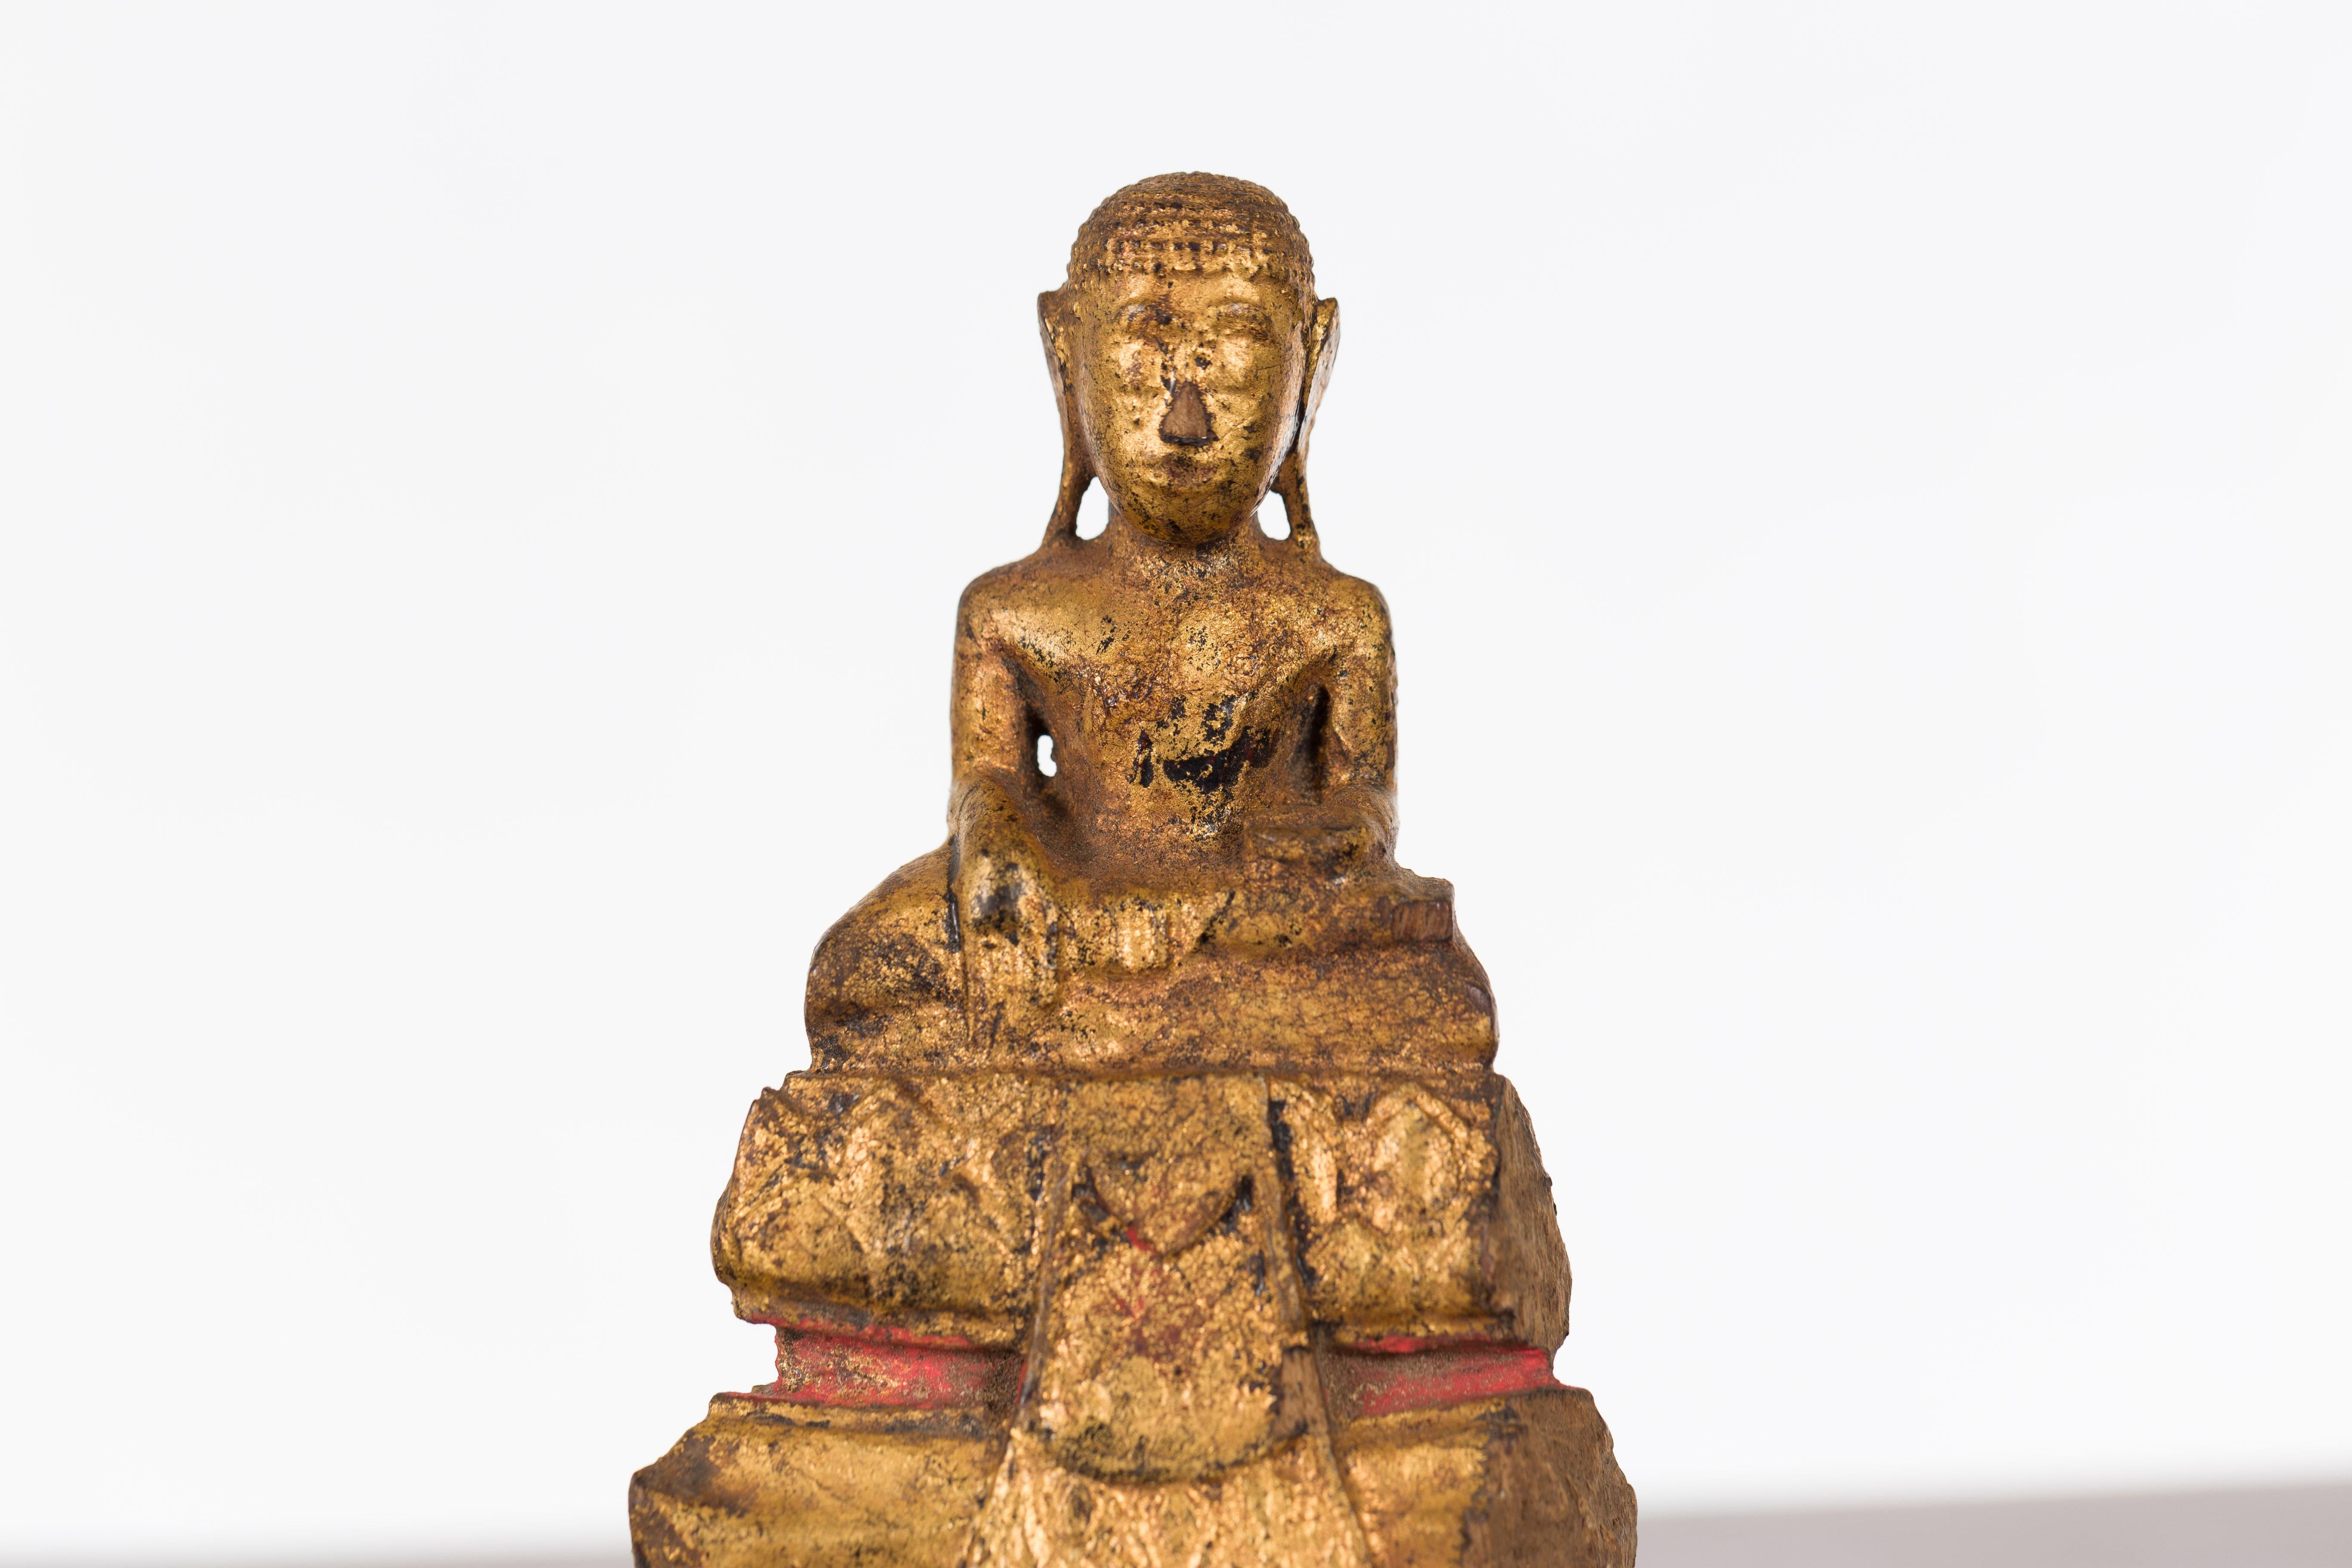 Carved Petite Giltwood Thai Ayutthaya Period Buddha Sculpture with Bhumisparsha Mudra